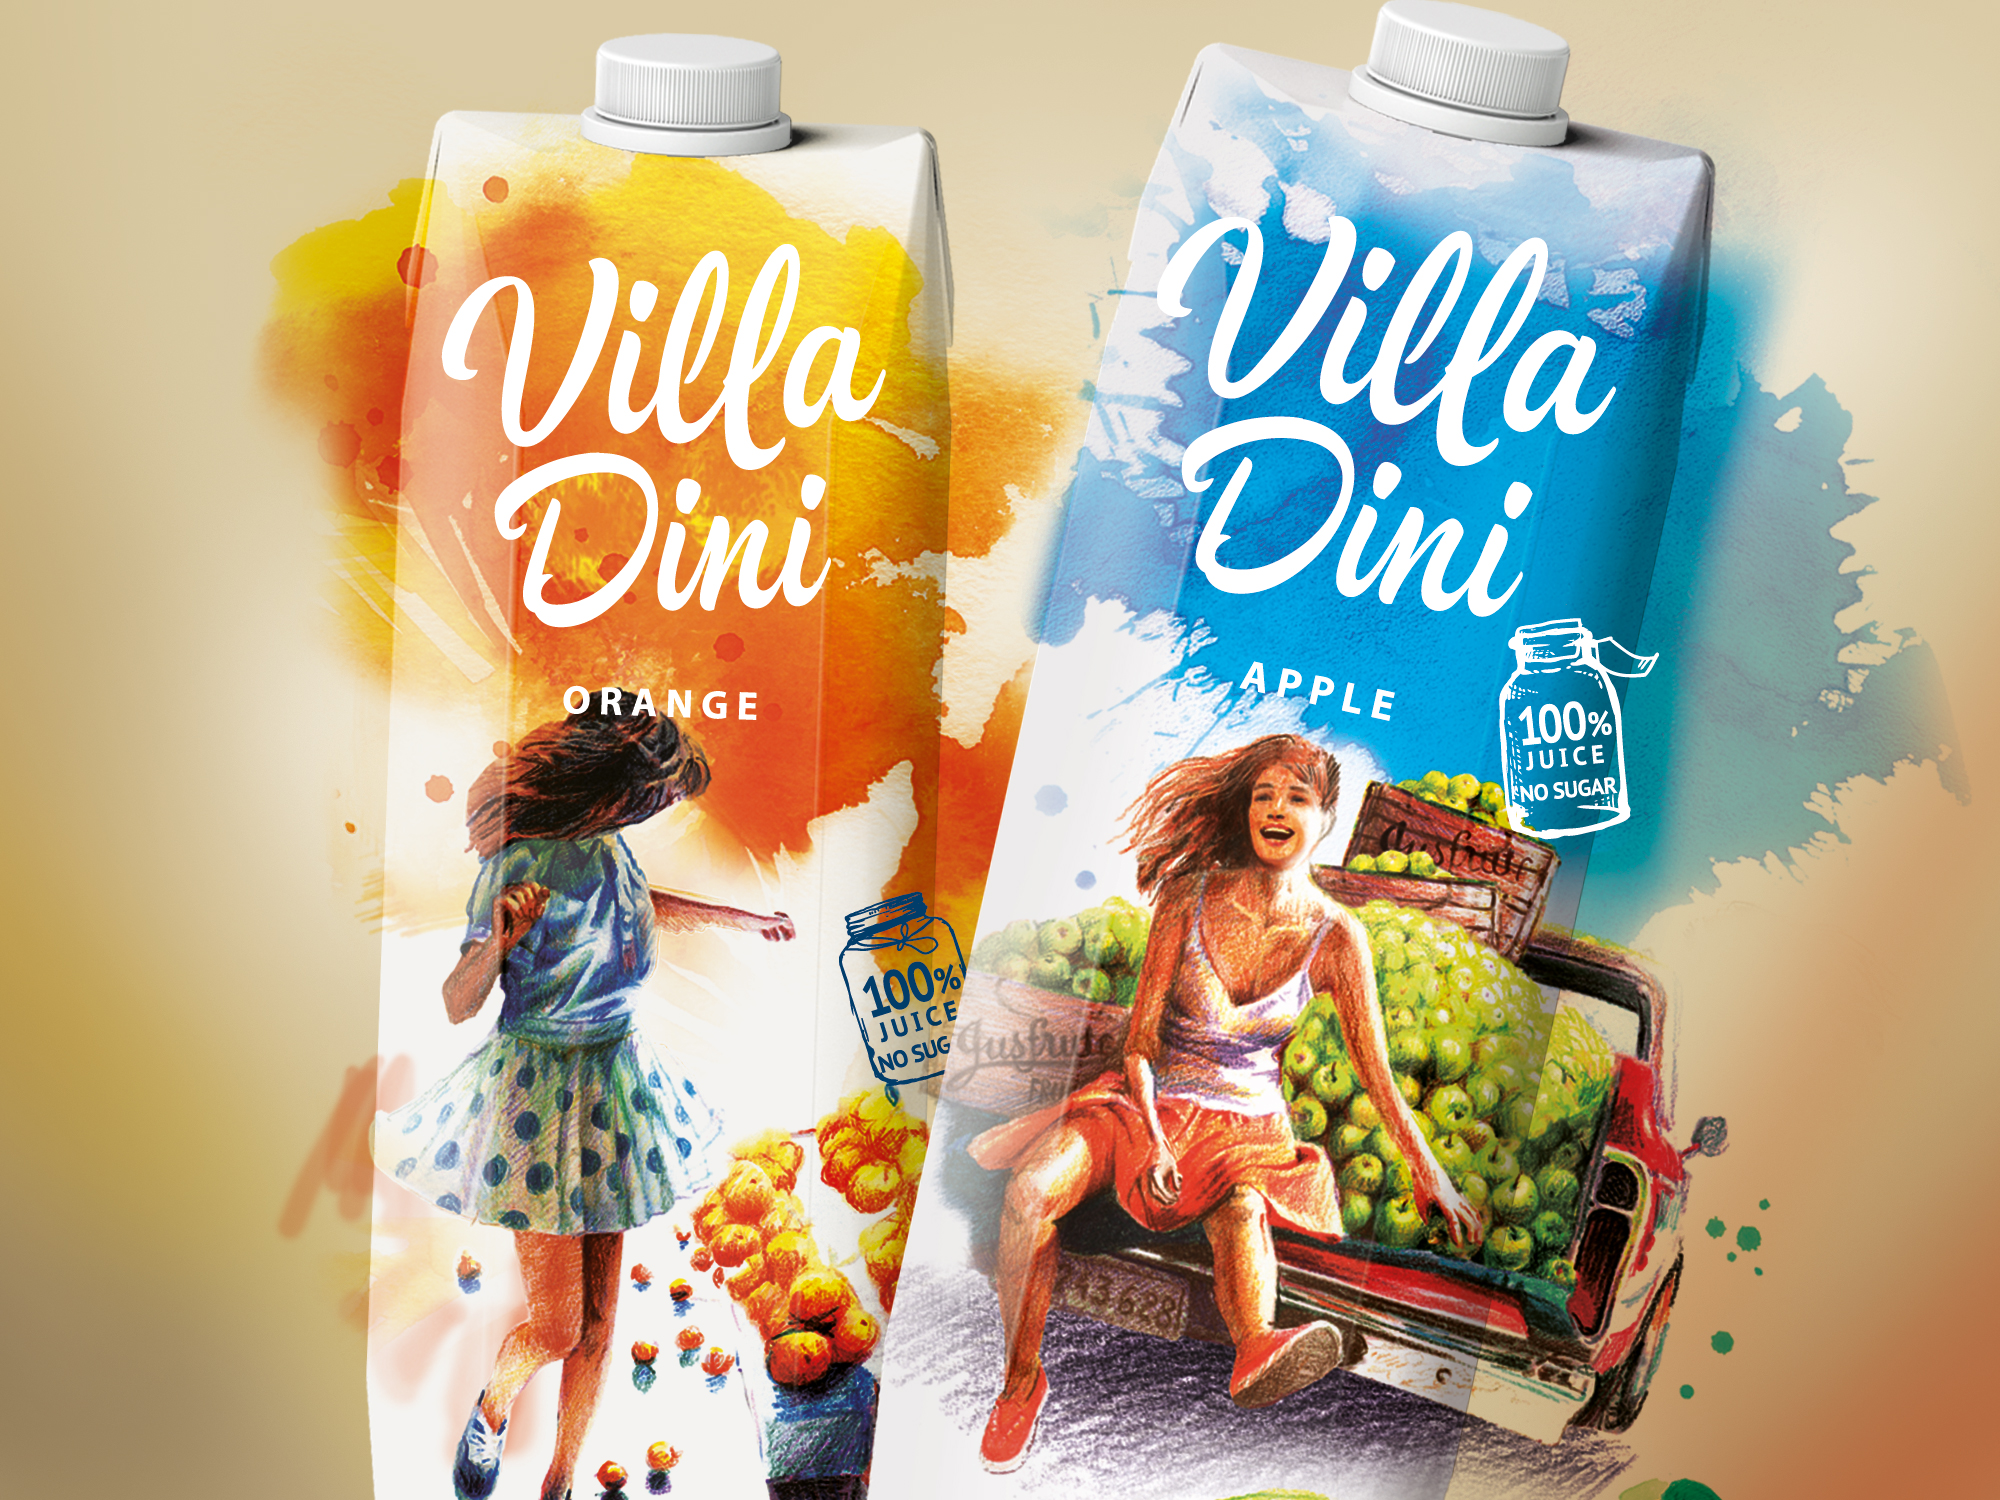 разработка бренда и дизайн упаковки соков и нектаров Villa Dini для компании Оазис (Oasis), позиционирование, нейминг, дизайн, креатив, иллюстрация